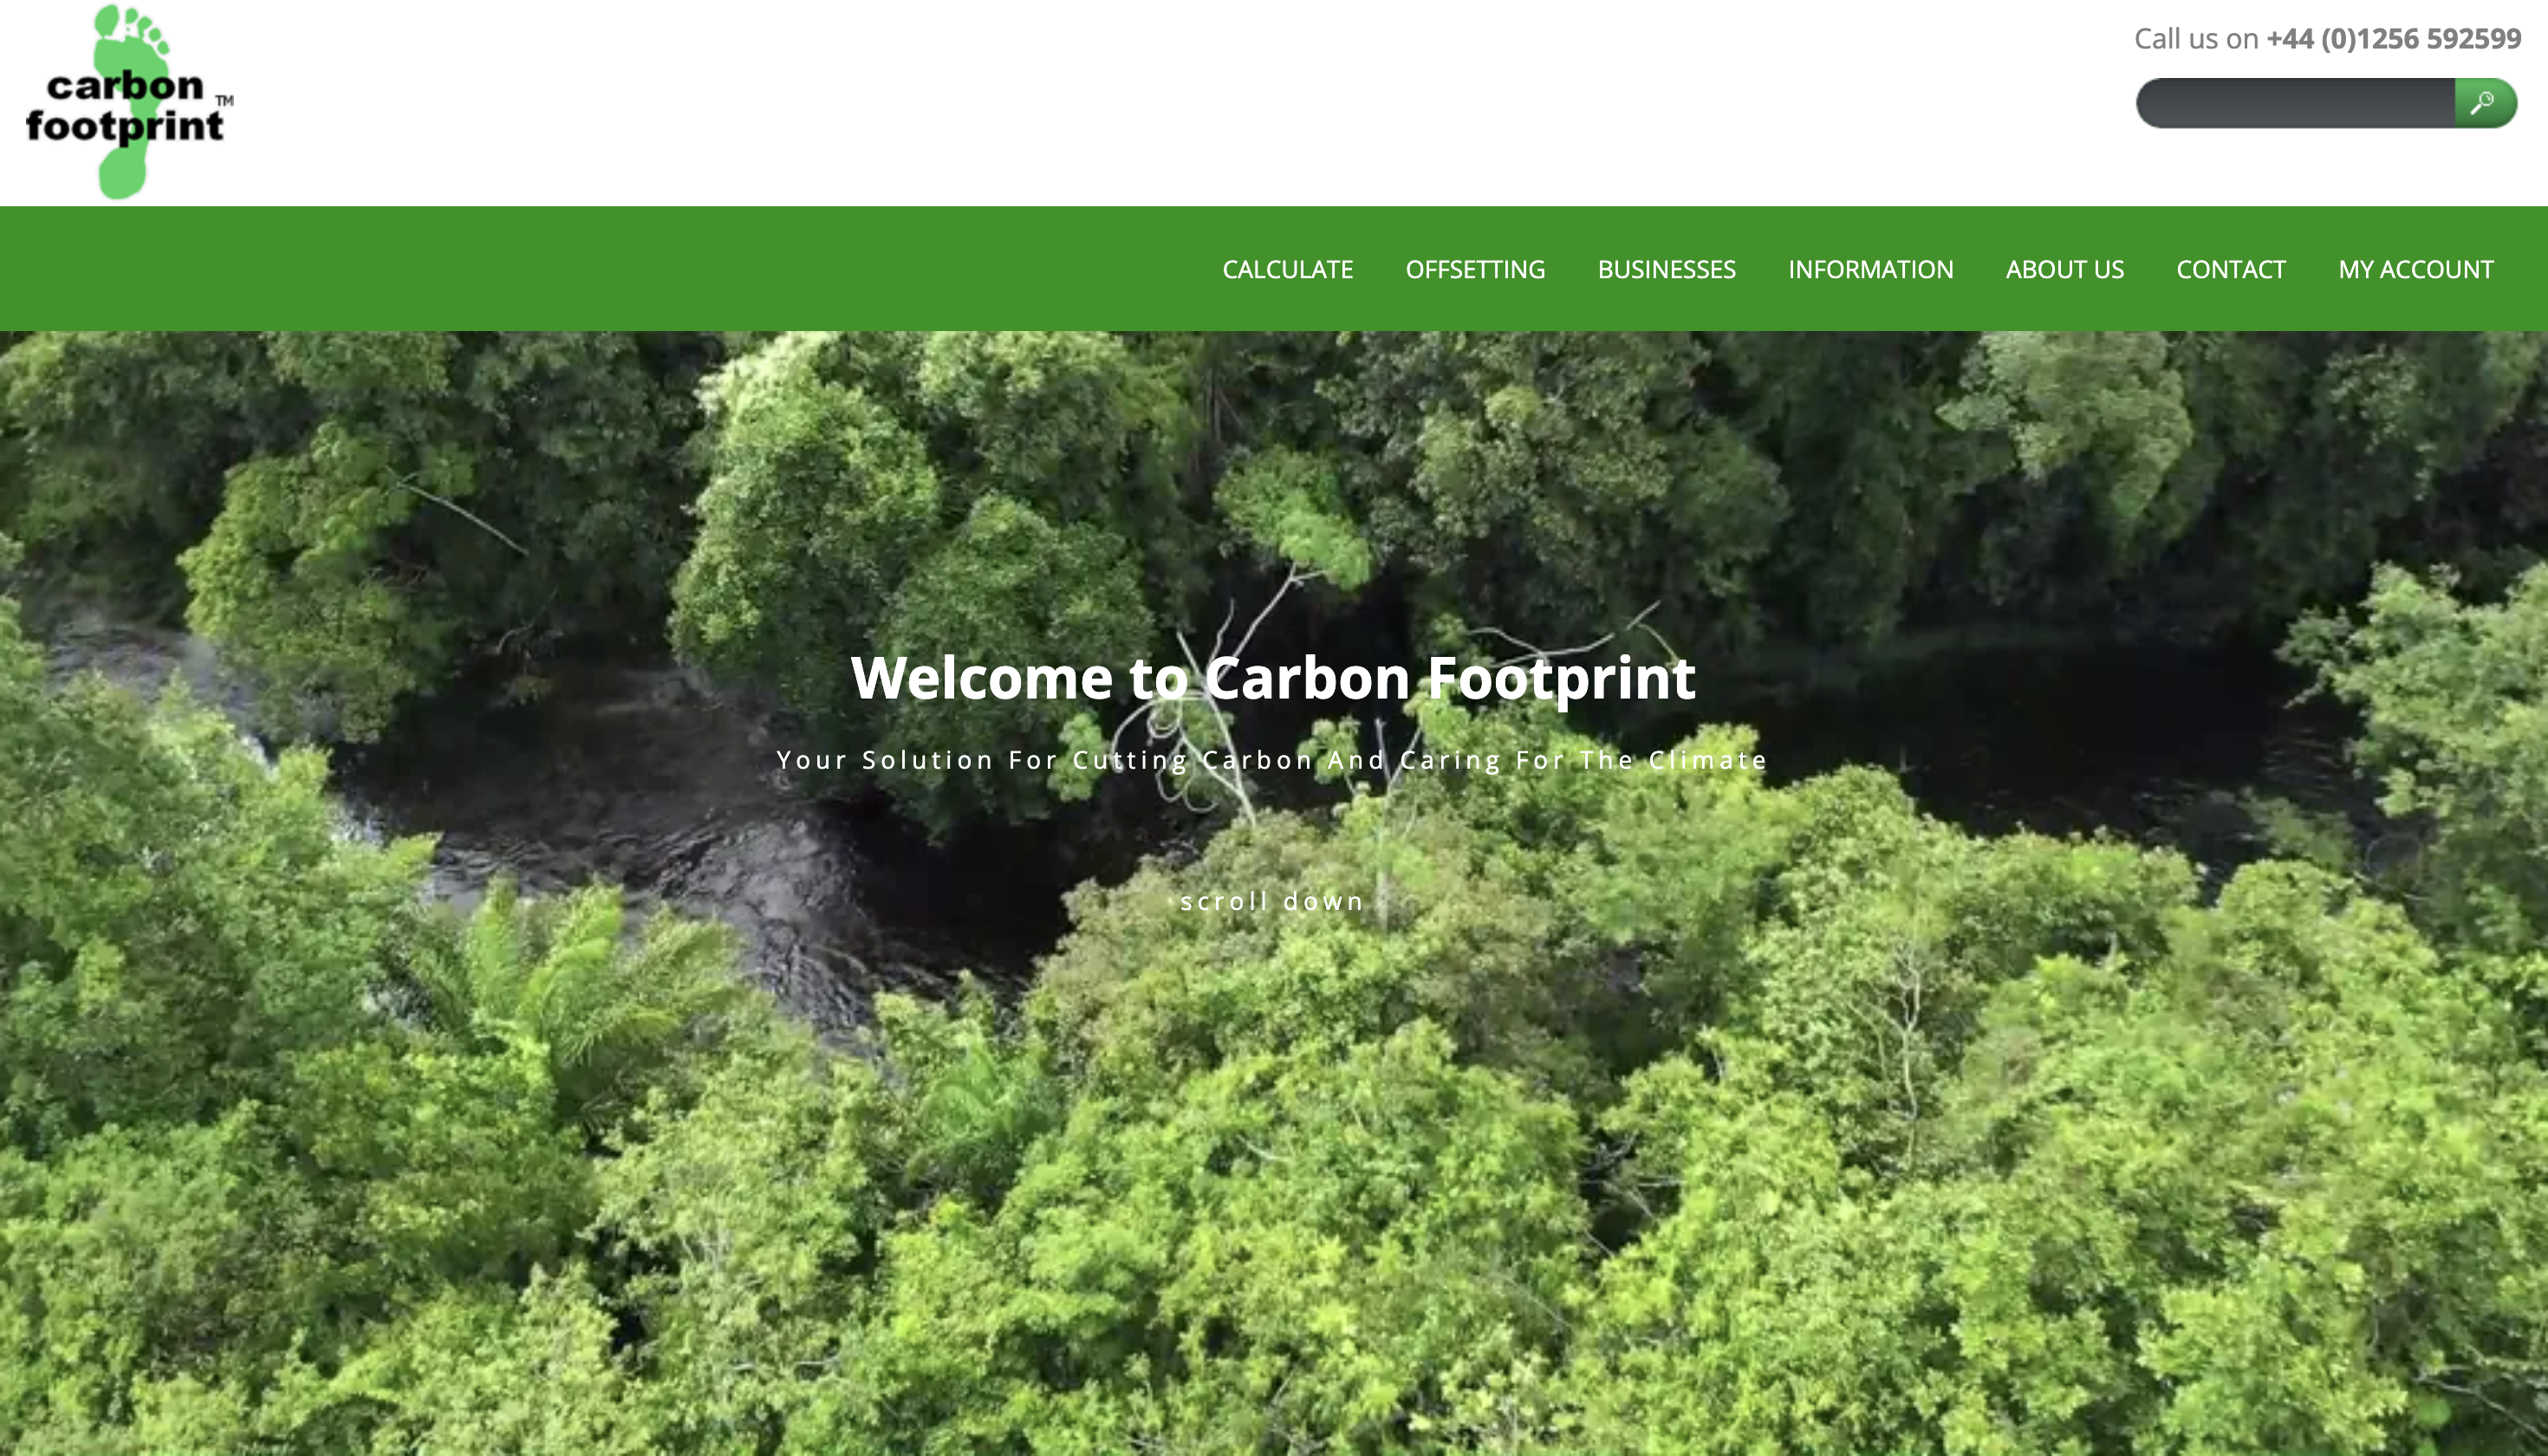 Carbon Footprint Ltd